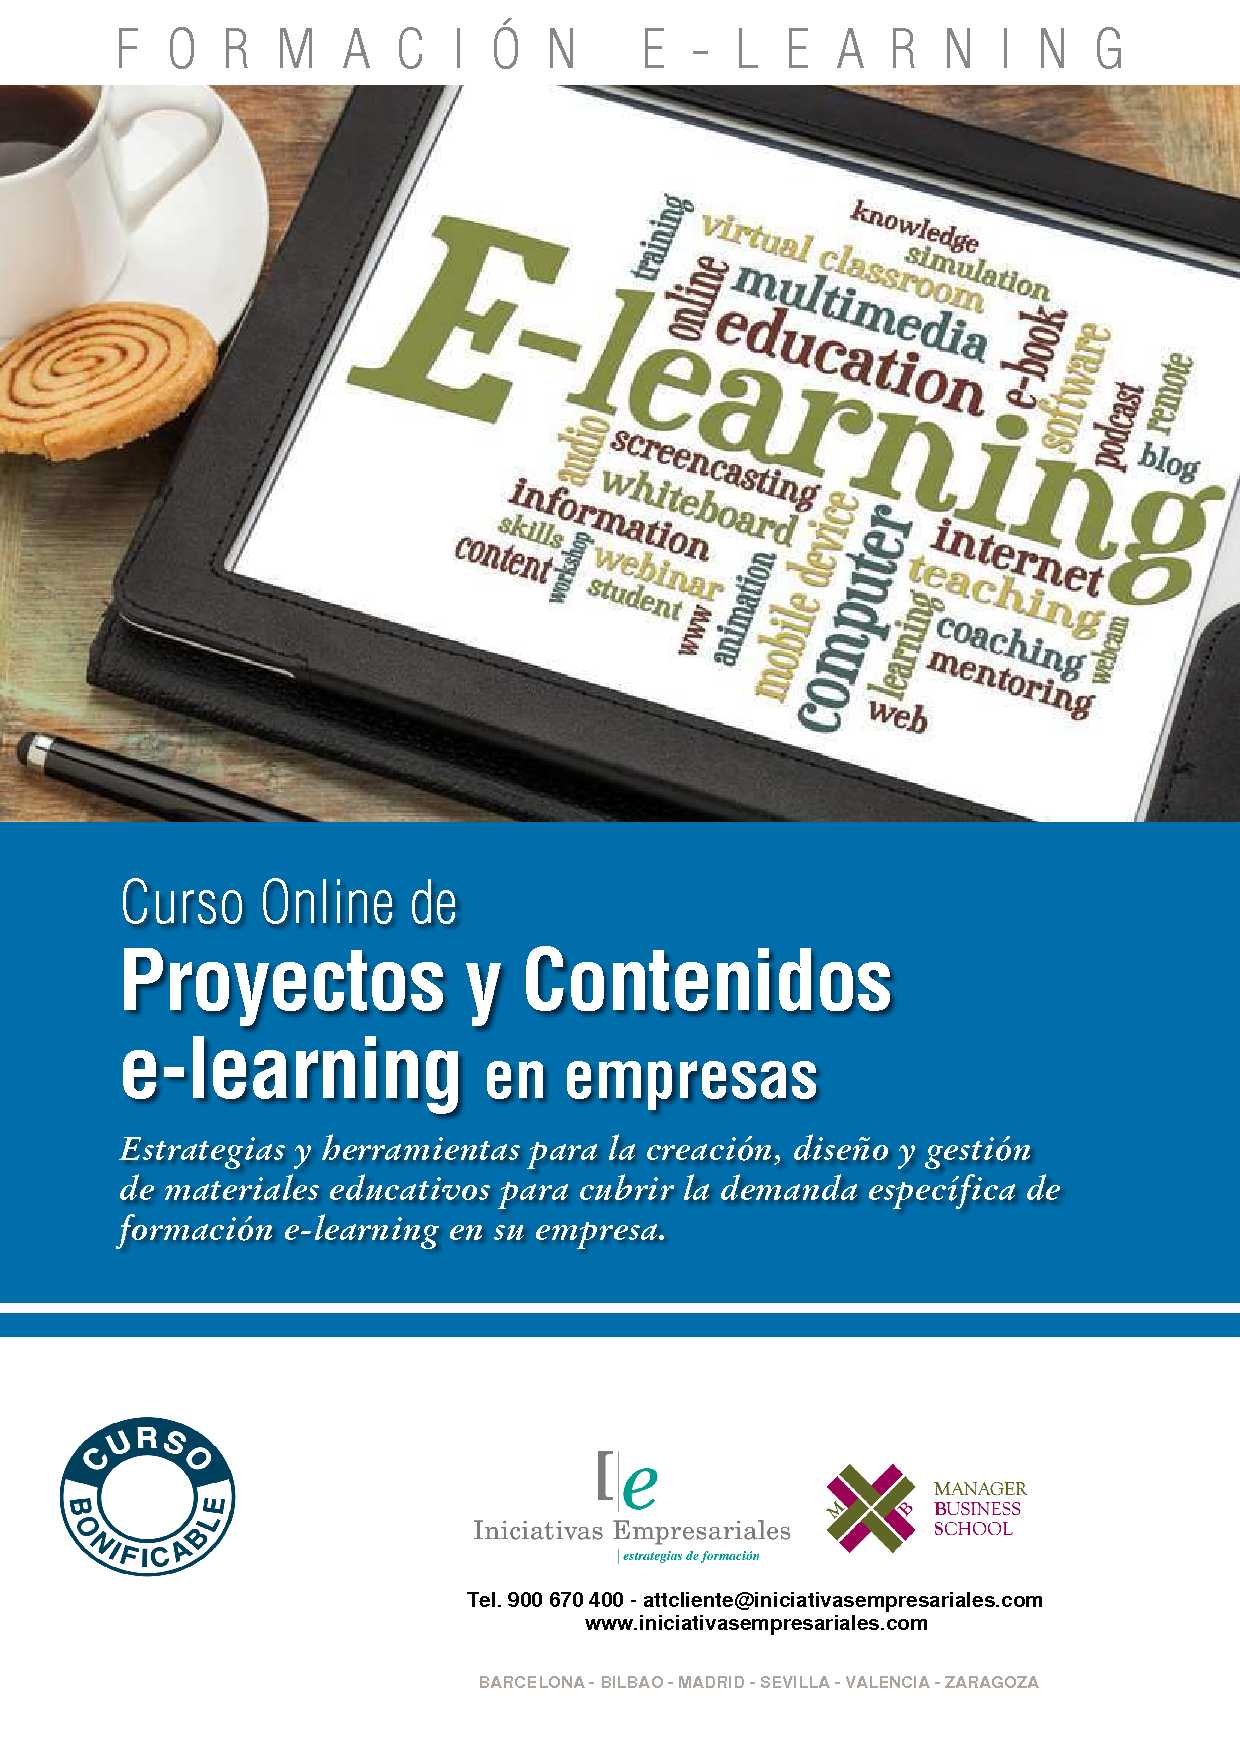 Proyectos y Contenidos E-Learning en Empresas